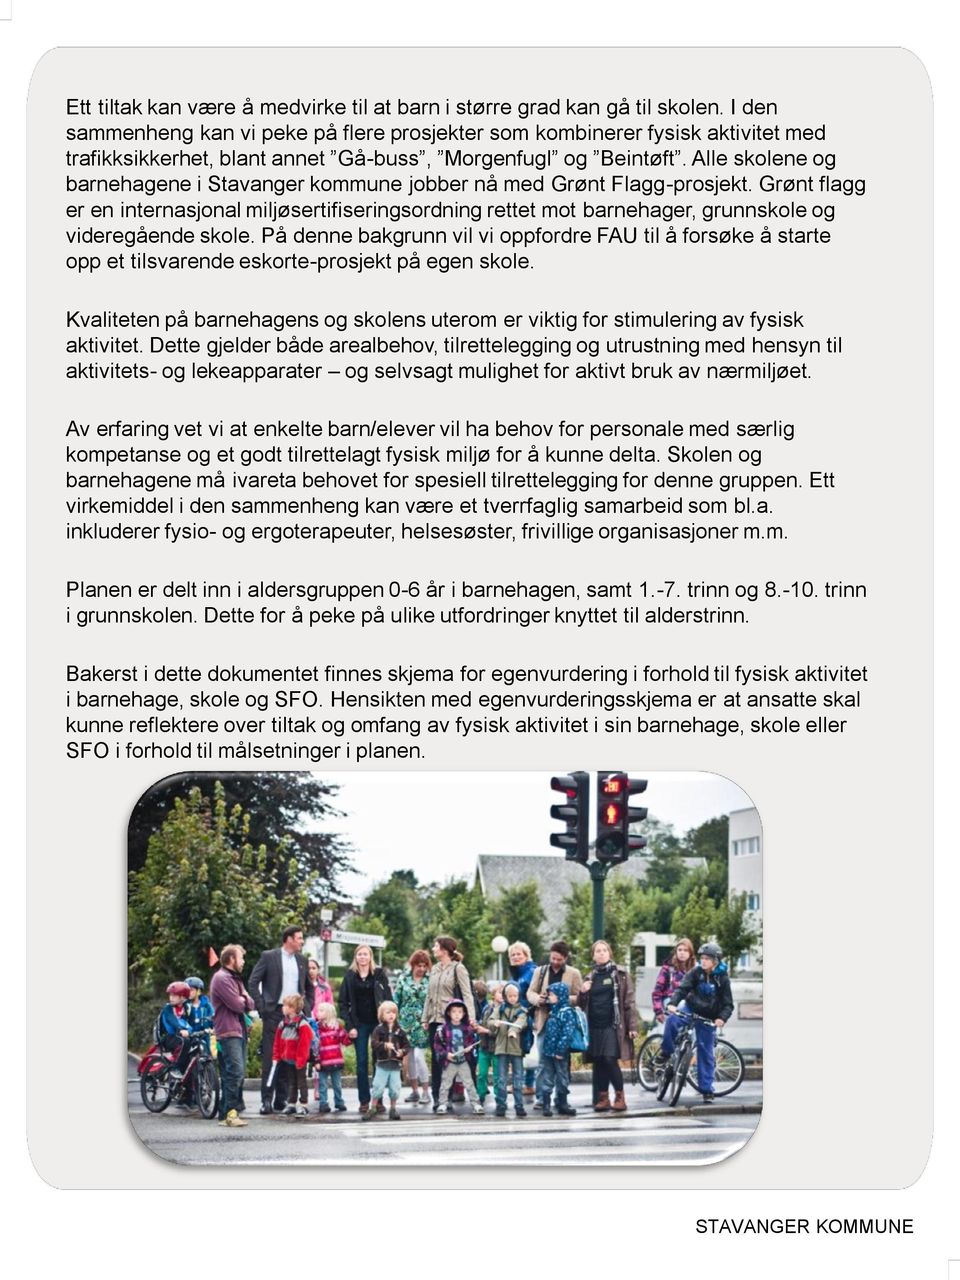 Alle skolene og barnehagene i Stavanger kommune jobber nå med Grønt Flagg-prosjekt. Grønt flagg er en internasjonal miljøsertifiseringsordning rettet mot barnehager, grunnskole og videregående skole.